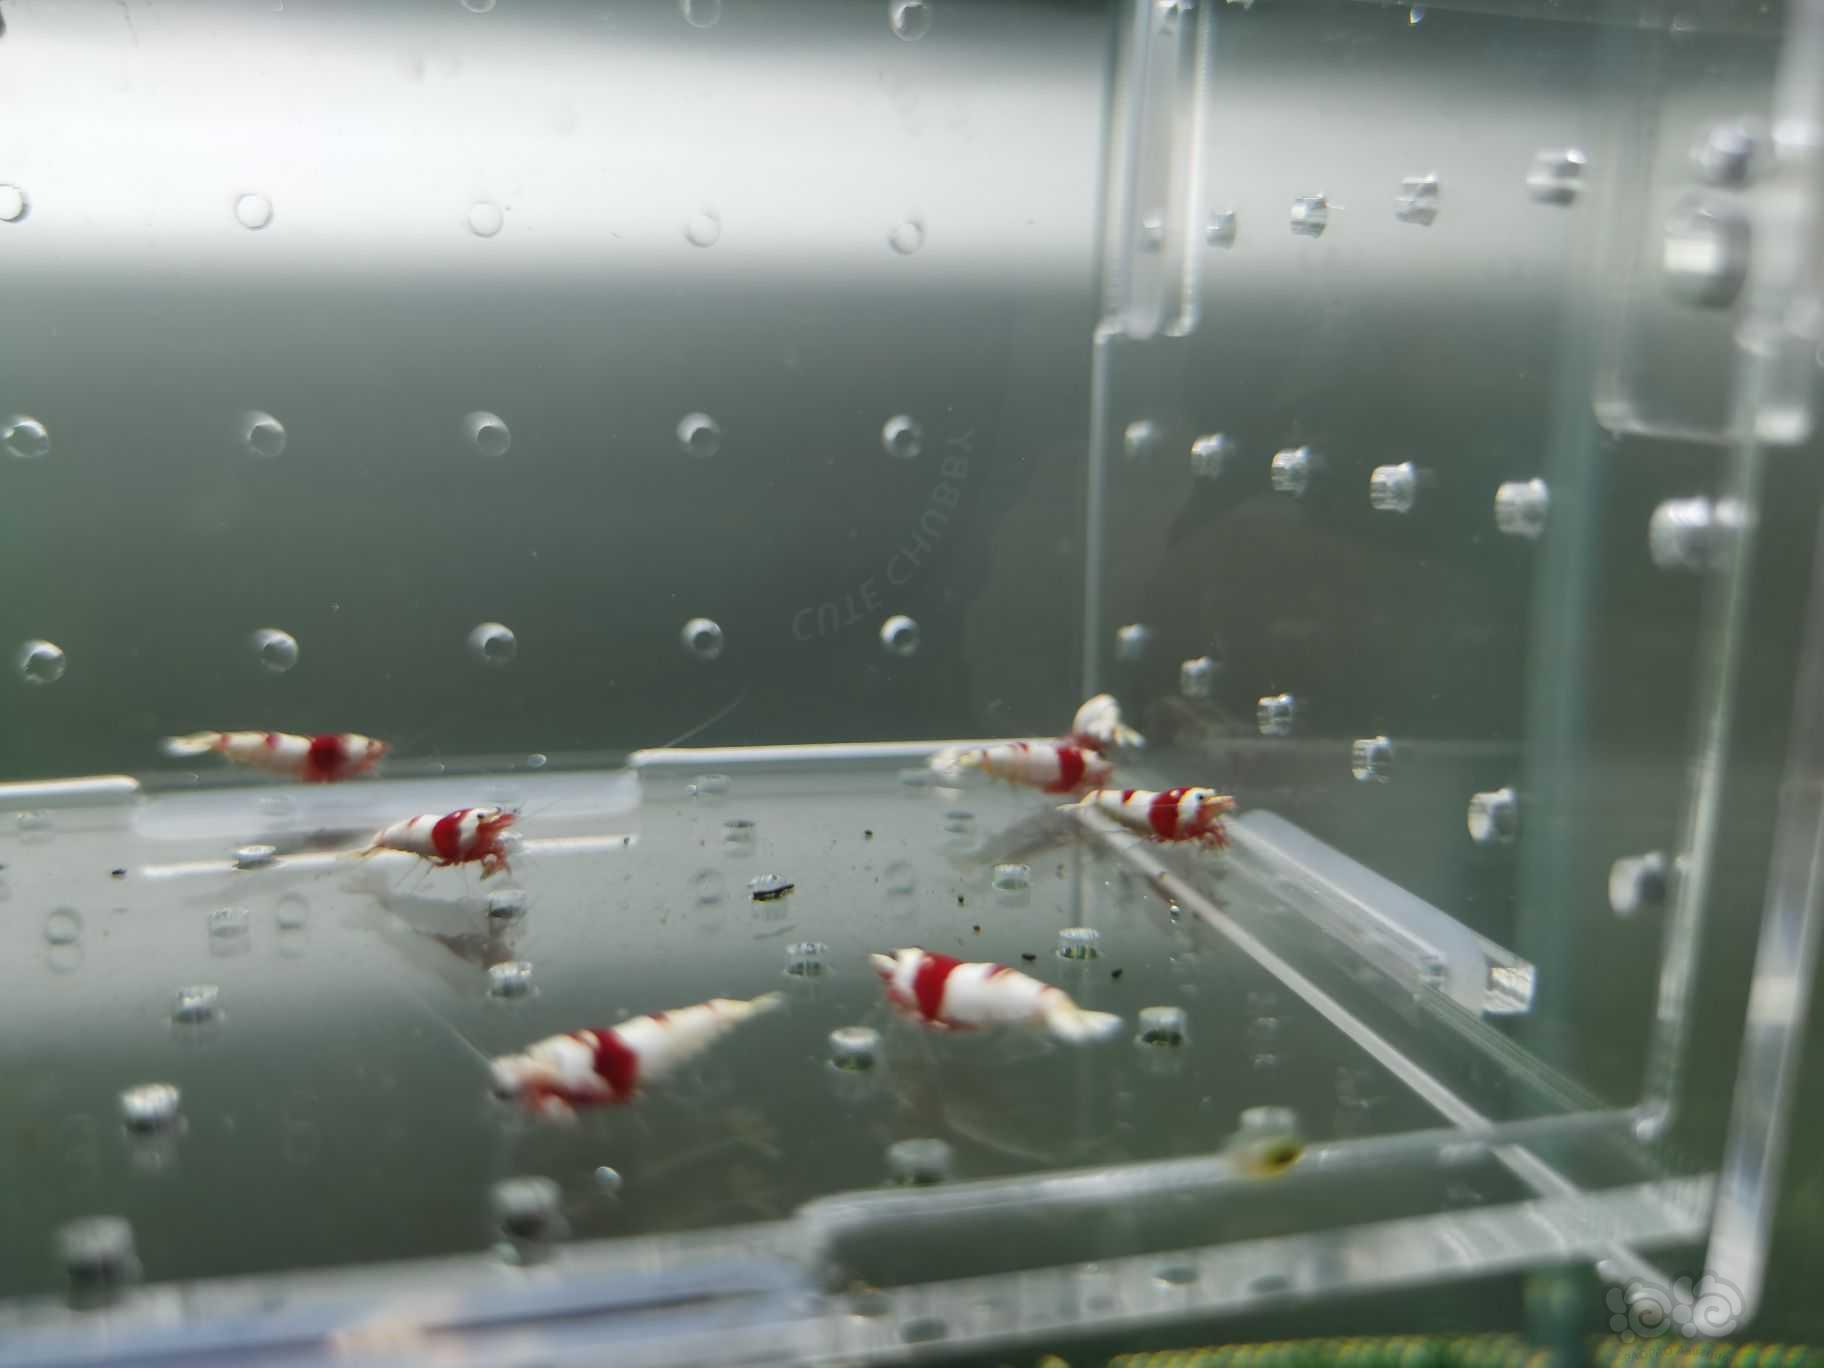 【水晶虾】出纯血红白水晶虾-图2